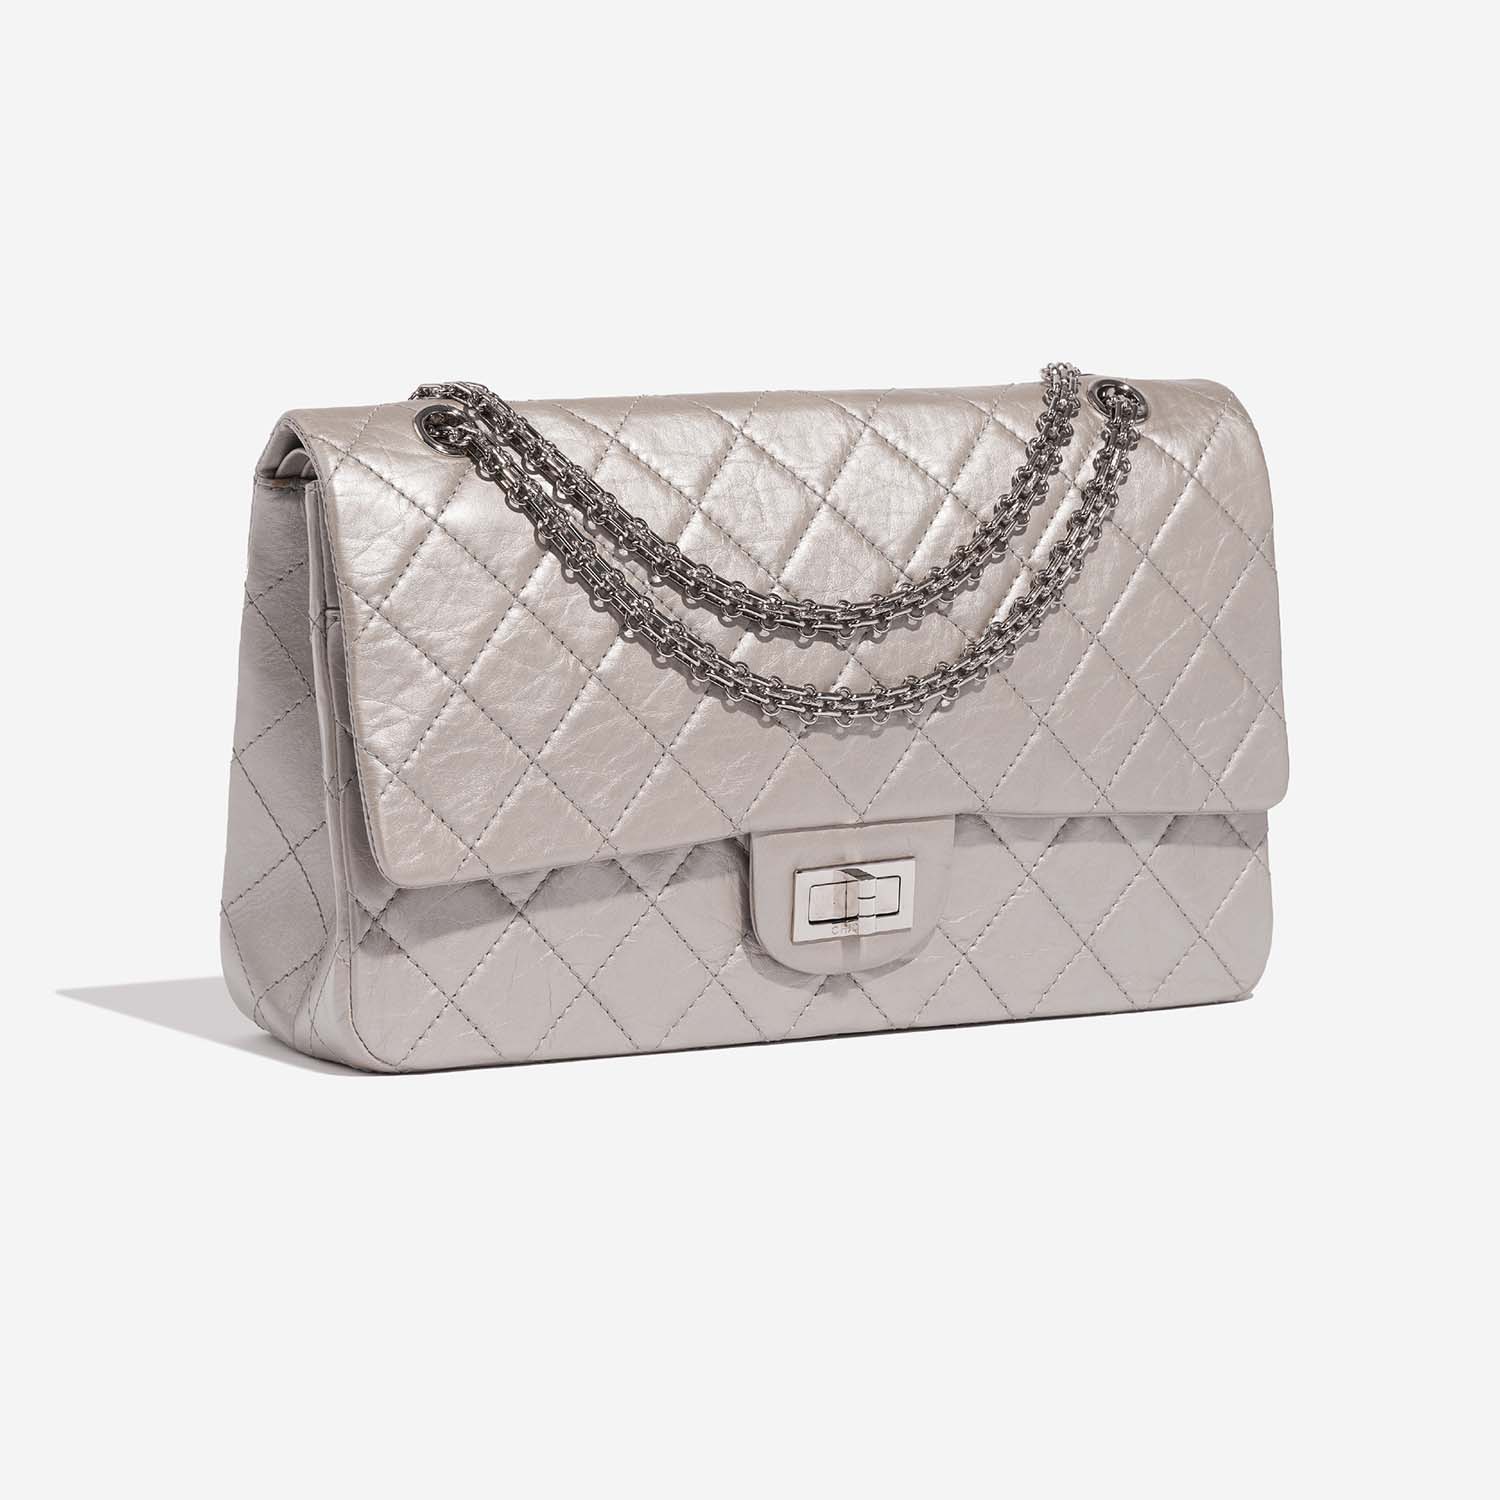 Chanel 255Reissue 227 Silver Side Front | Verkaufen Sie Ihre Designer-Tasche auf Saclab.com